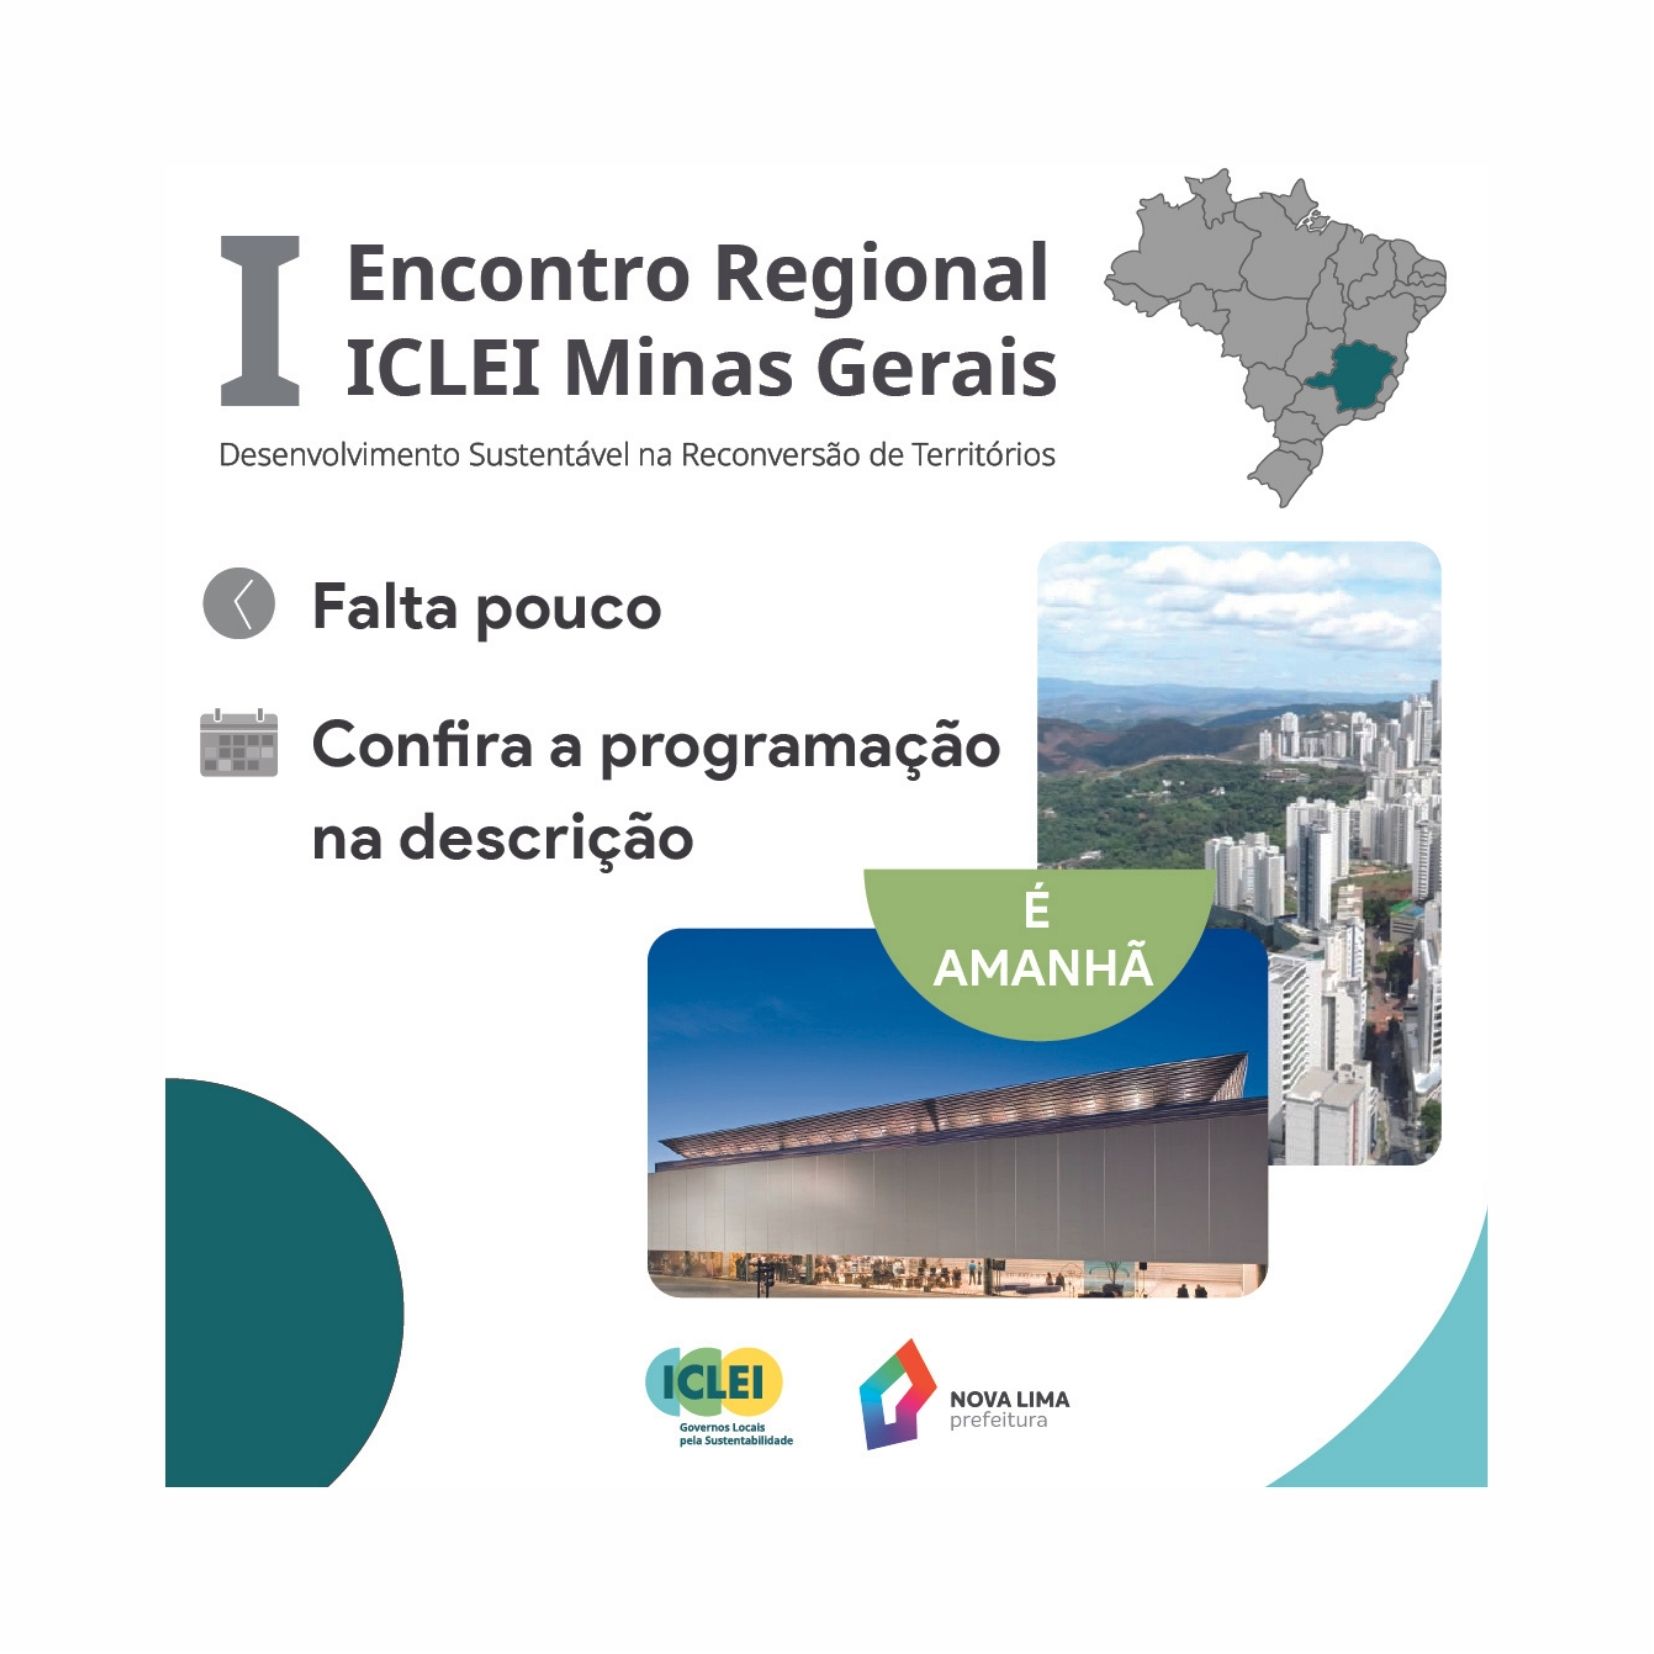 I Encontro Regional do ICLEI Minas Gerais em parceria com Nova Lima vai começar e a programação conta com painelistas internacionais